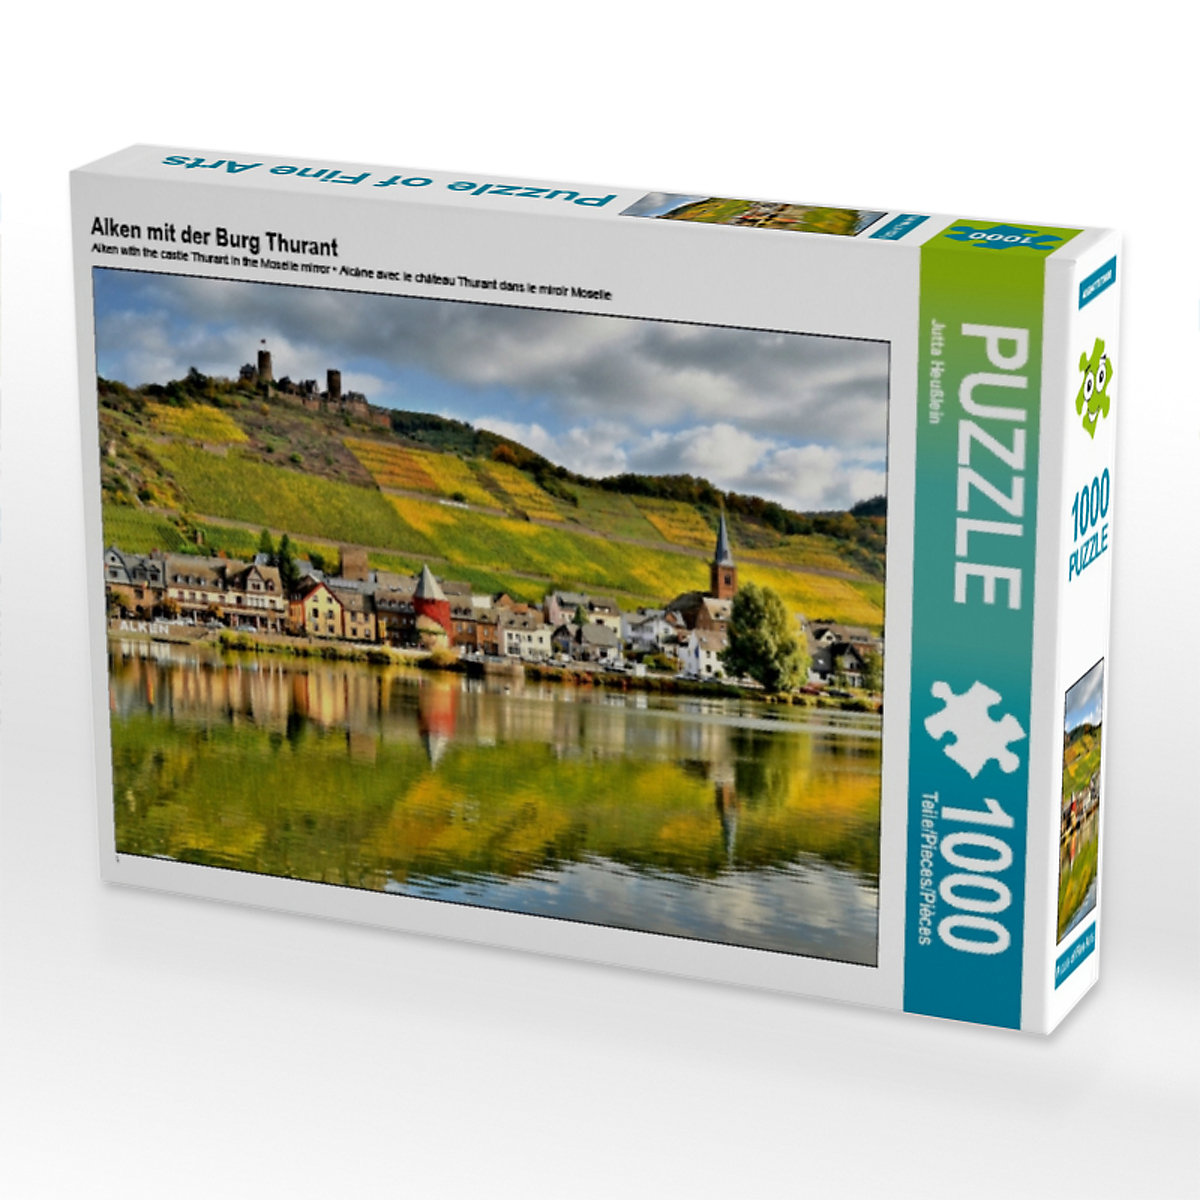 CALVENDO® Puzzle CALVENDO Puzzle Alken mit der Burg Thurant 1000 Teile Foto-Puzzle für glückliche Stunden